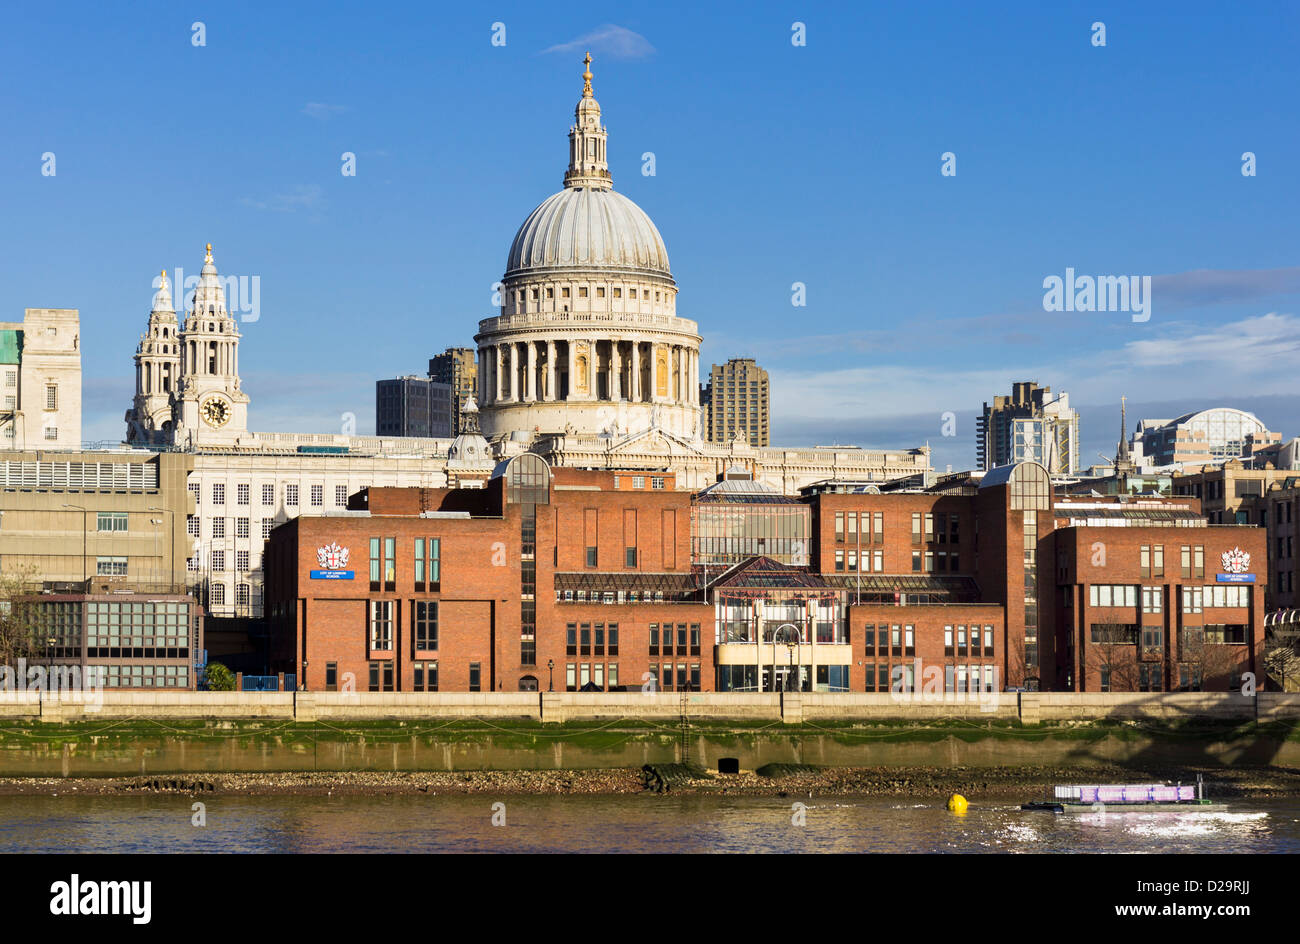 Edificio escolar de la ciudad de Londres y la Catedral de St Paul detrás, Londres, Reino Unido. Foto de stock